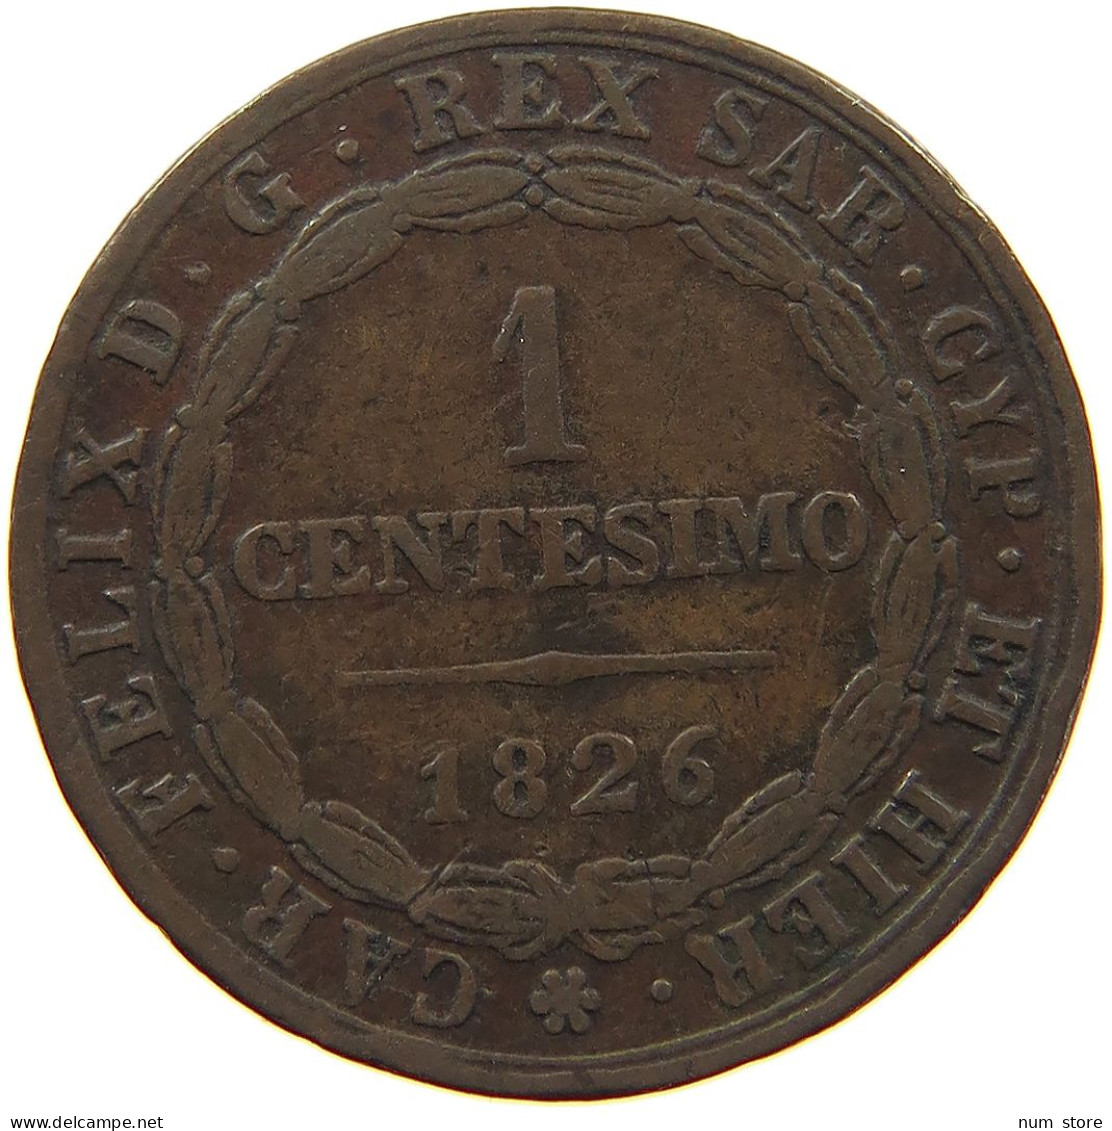 ITALY STATES SARDINIA CENTESIMO 1826 Carlo Felice 1821-1831 #s001 0163 - Italian Piedmont-Sardinia-Savoie